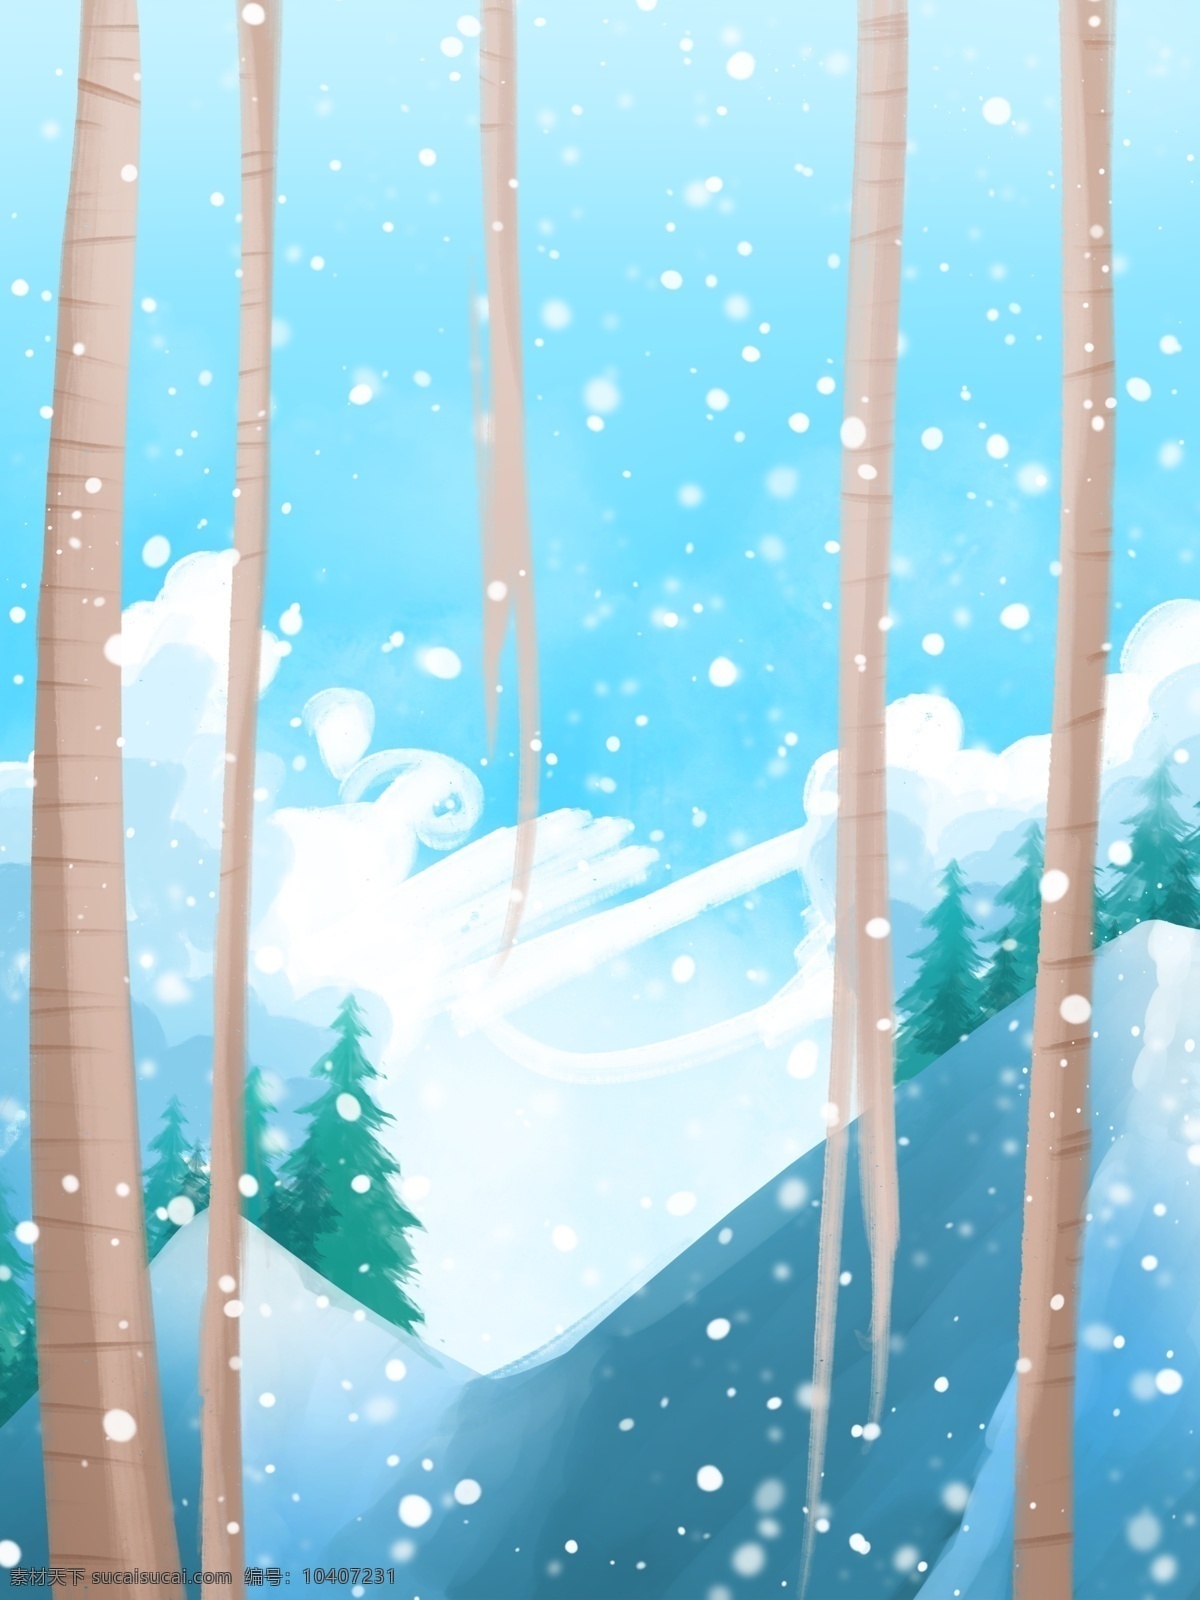 蓝色 唯美 冬至 节气 树林 雪景 背景 卡通冬季 冬天来了 清新水彩雪景 冬至背景 小雪 大雪 树木 蓝色背景